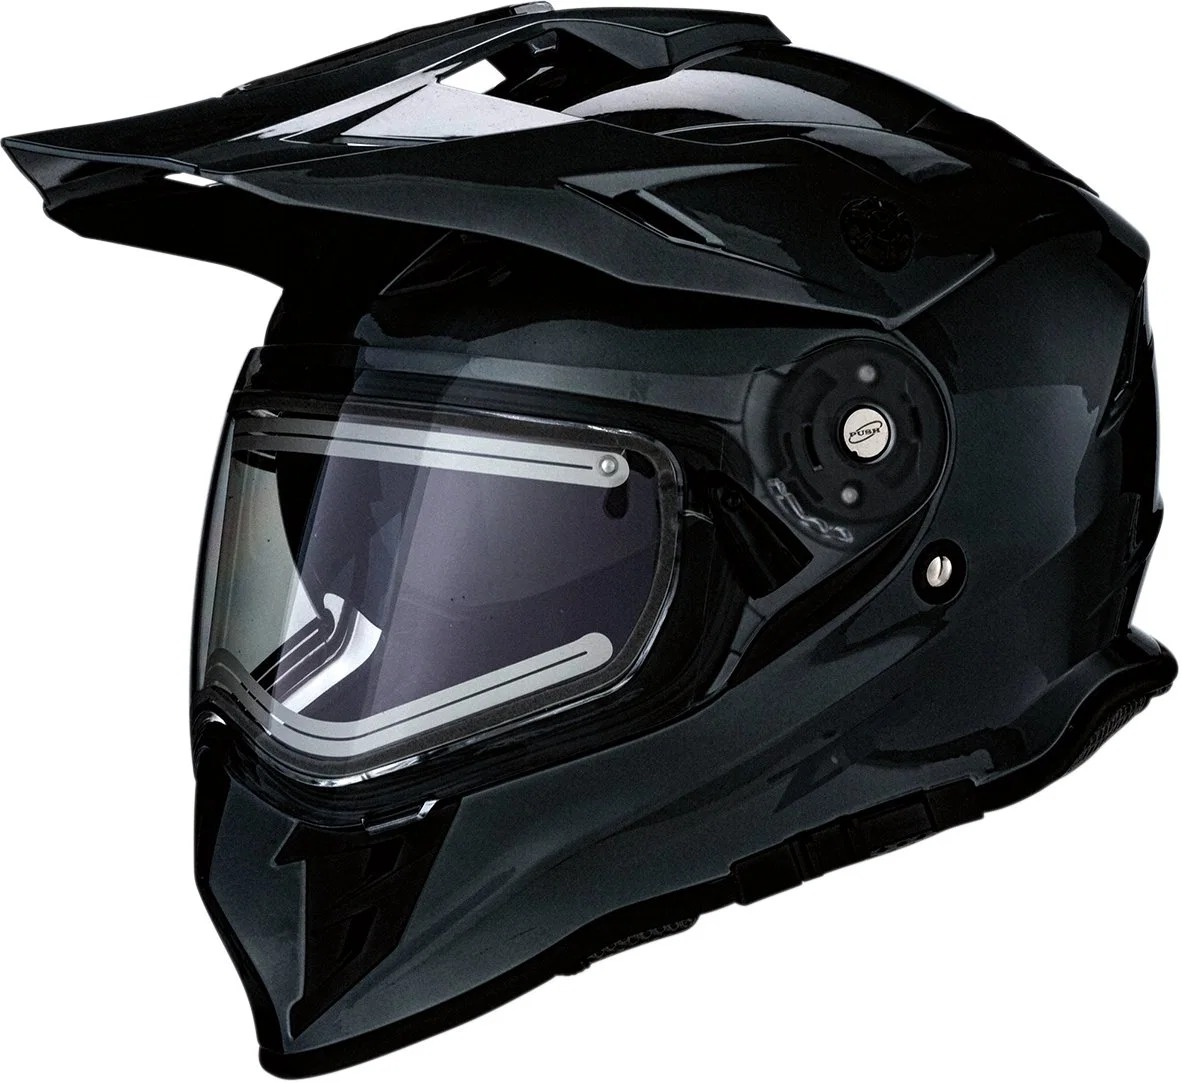 ECE DOT Approved Motorcycle Snowmobile Full Face Helmet Anti-Fog Motocross ATV Casco Helmet with Electric Visor